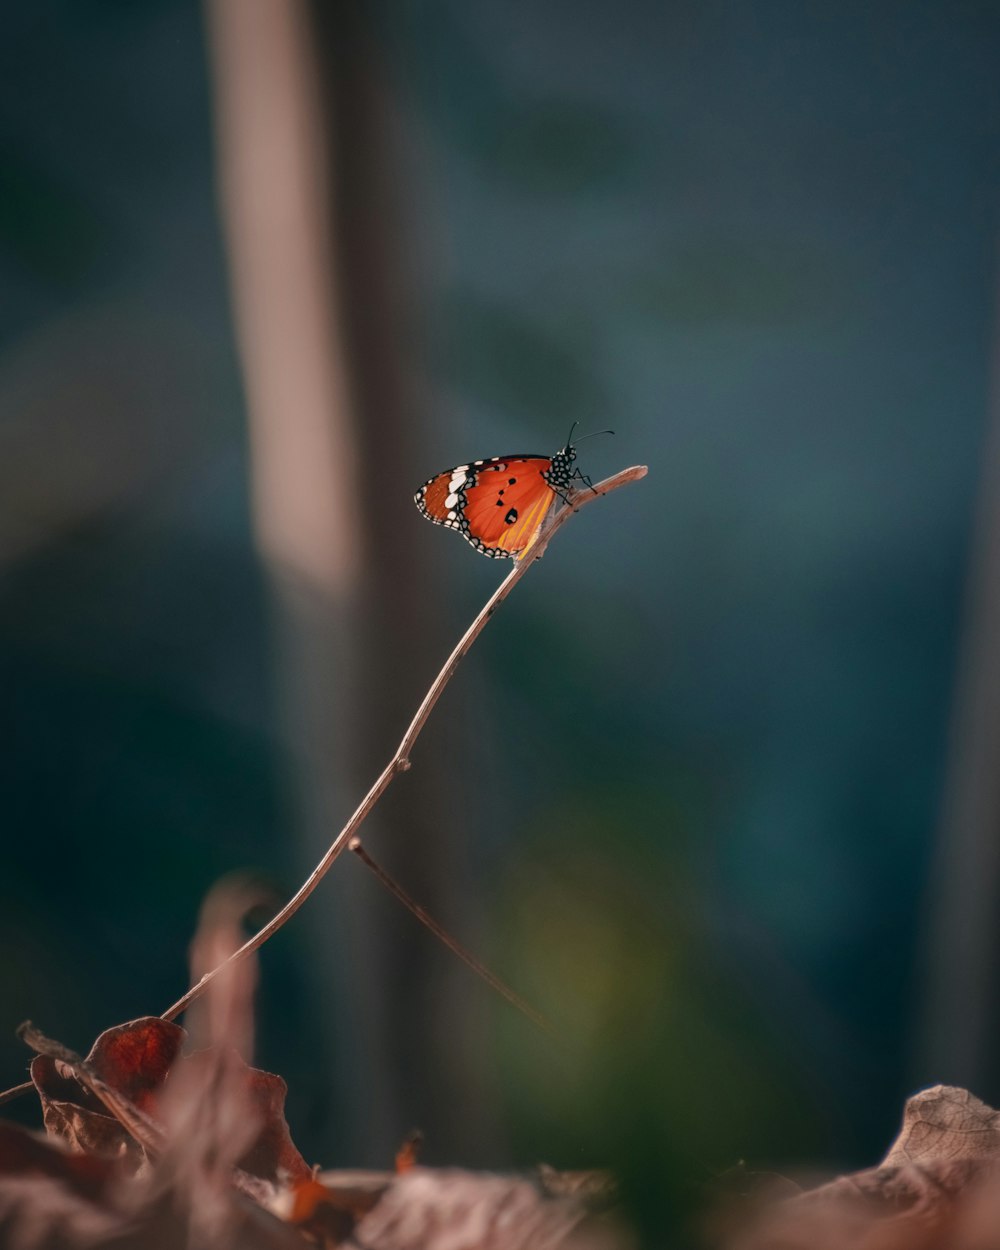 Brauner und weißer Schmetterling sitzt tagsüber auf braunem Stiel in Nahaufnahmen